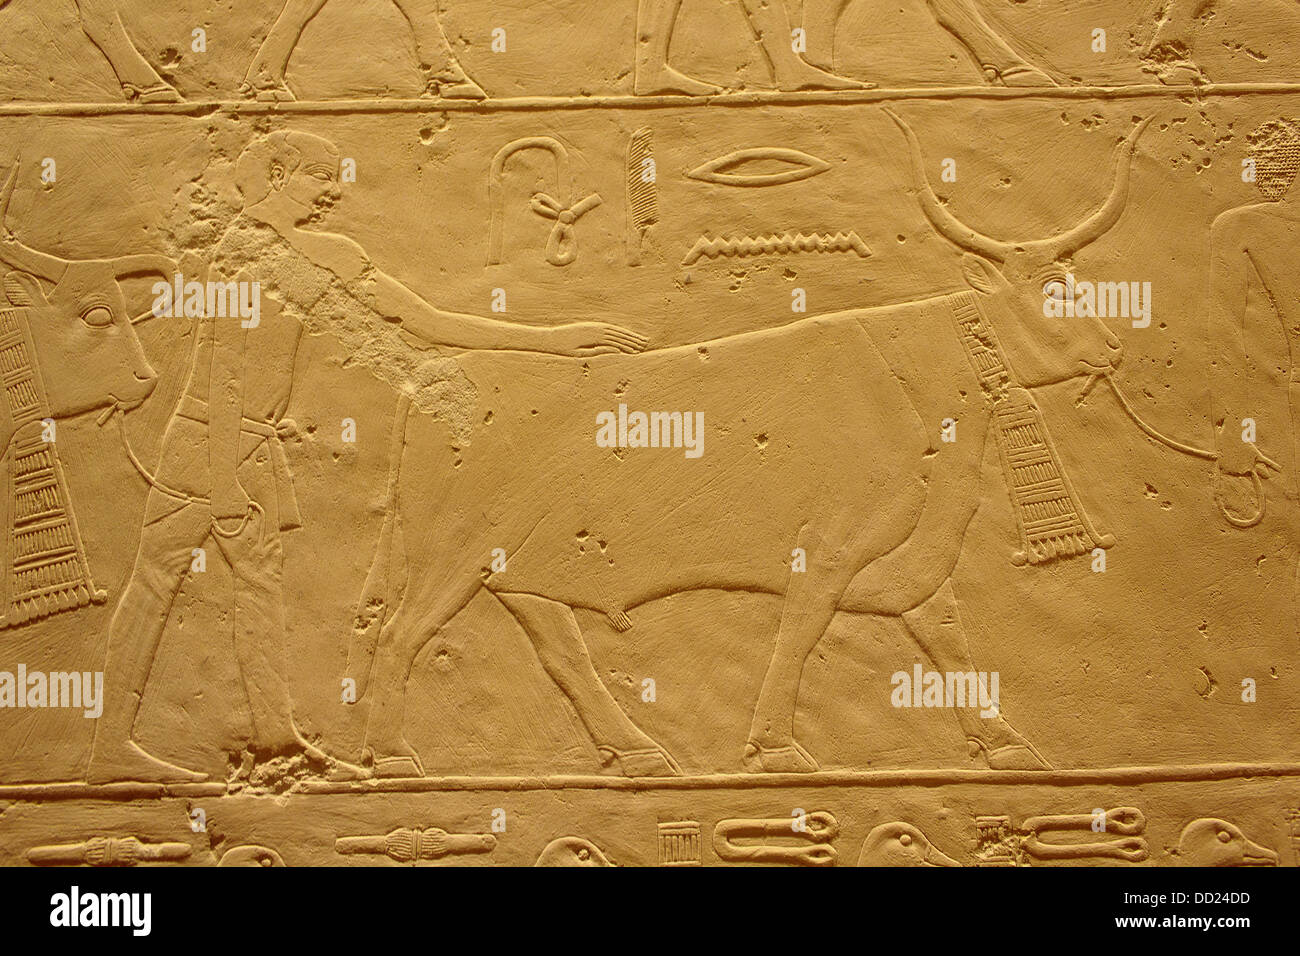 Eine Closeup Aufnahme des ägyptischen Steinskulpturen aus ein uraltes Artefakt im Berliner Museum bewahrt. Stockfoto